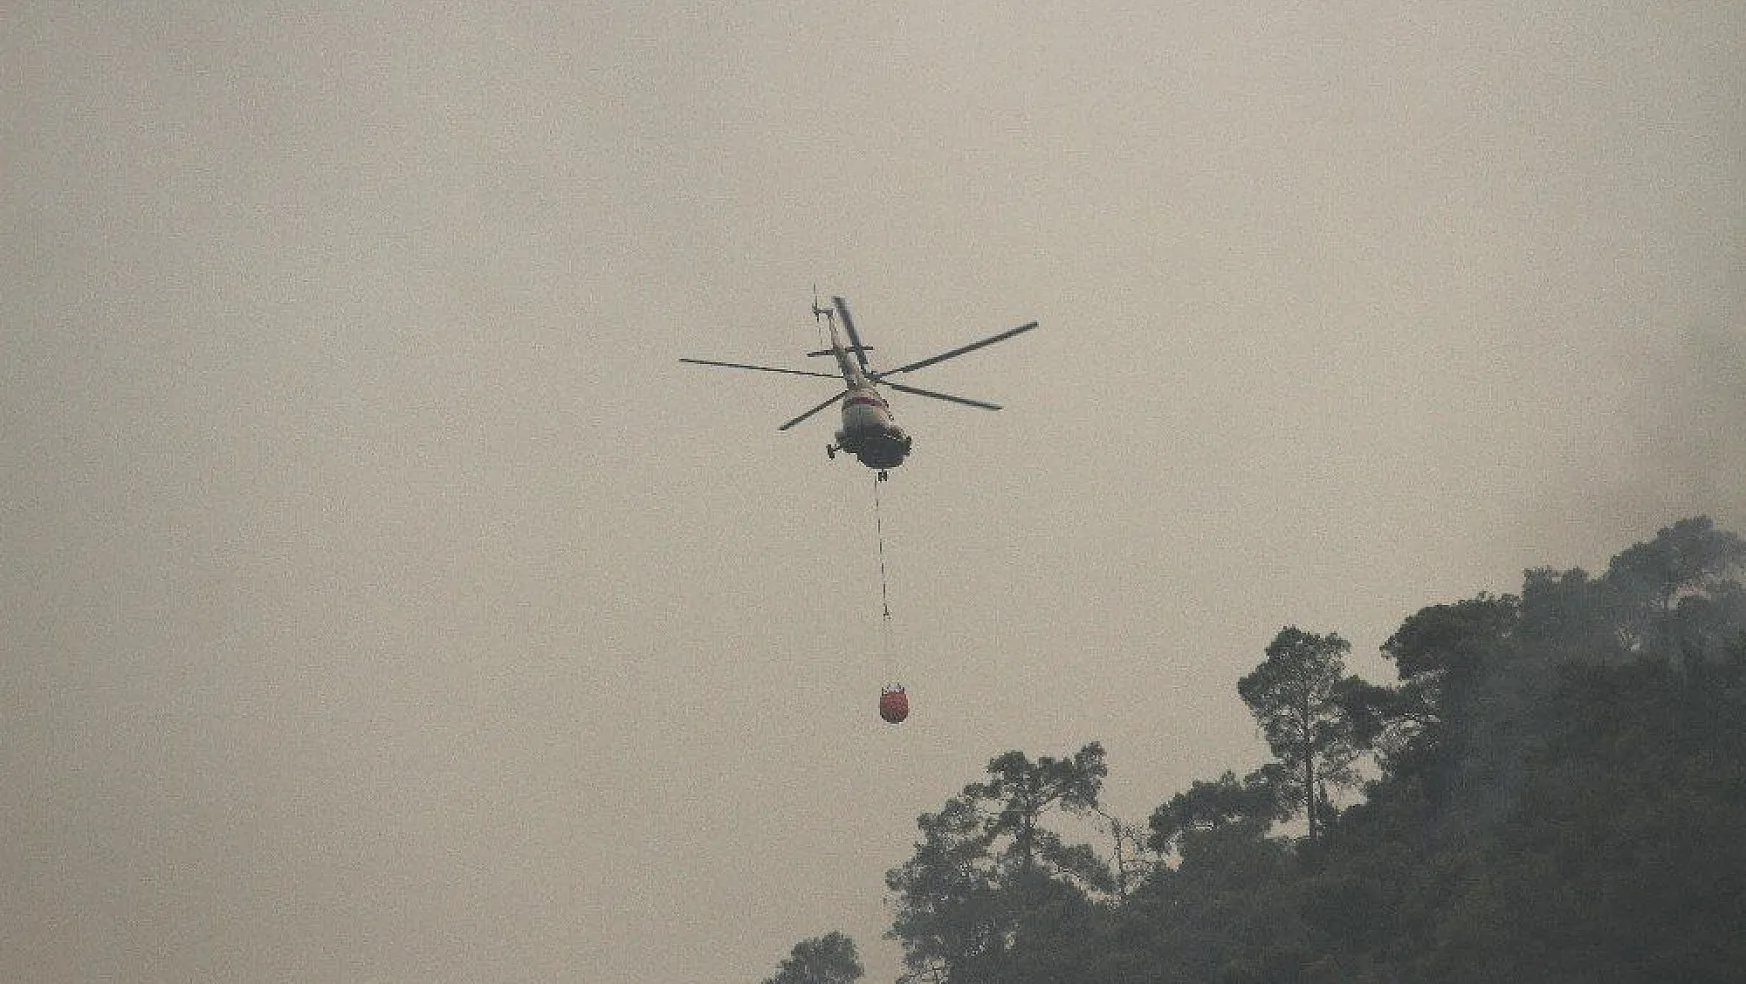 Dalamandaki yangında helikopterler havadan müdahaleye başladı